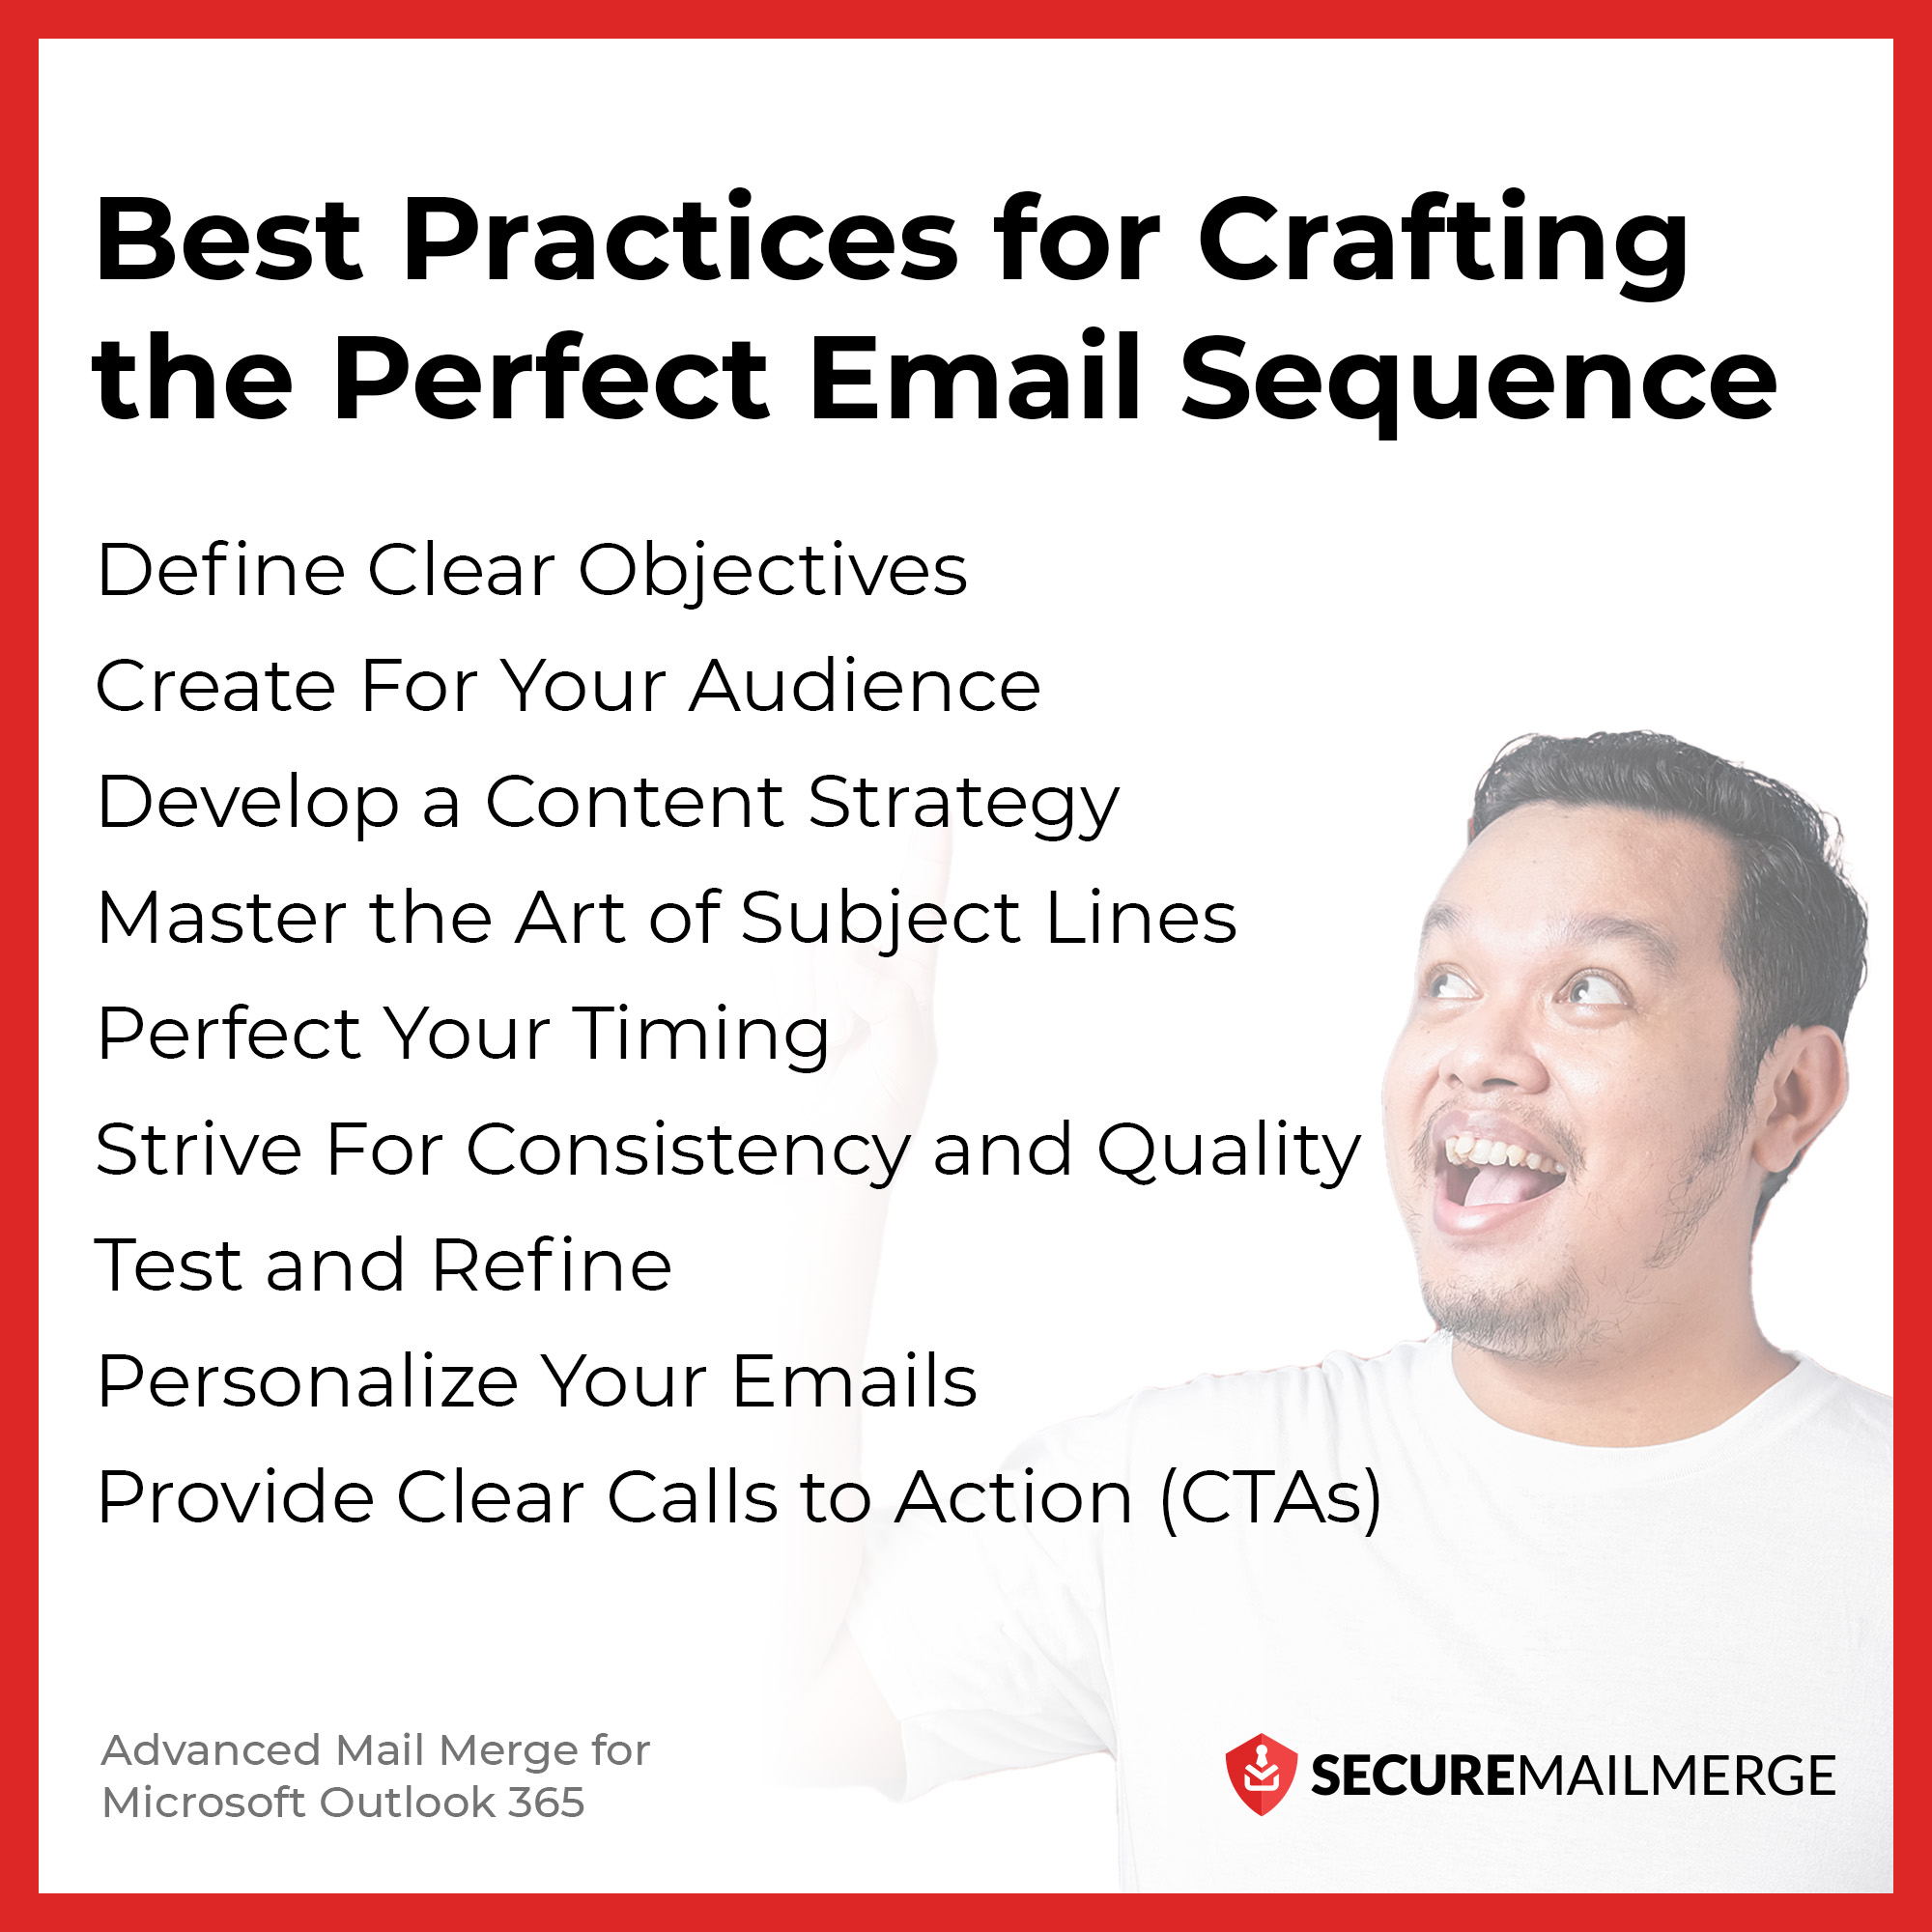 Meilleures pratiques pour créer une séquence d'e-mails parfaite